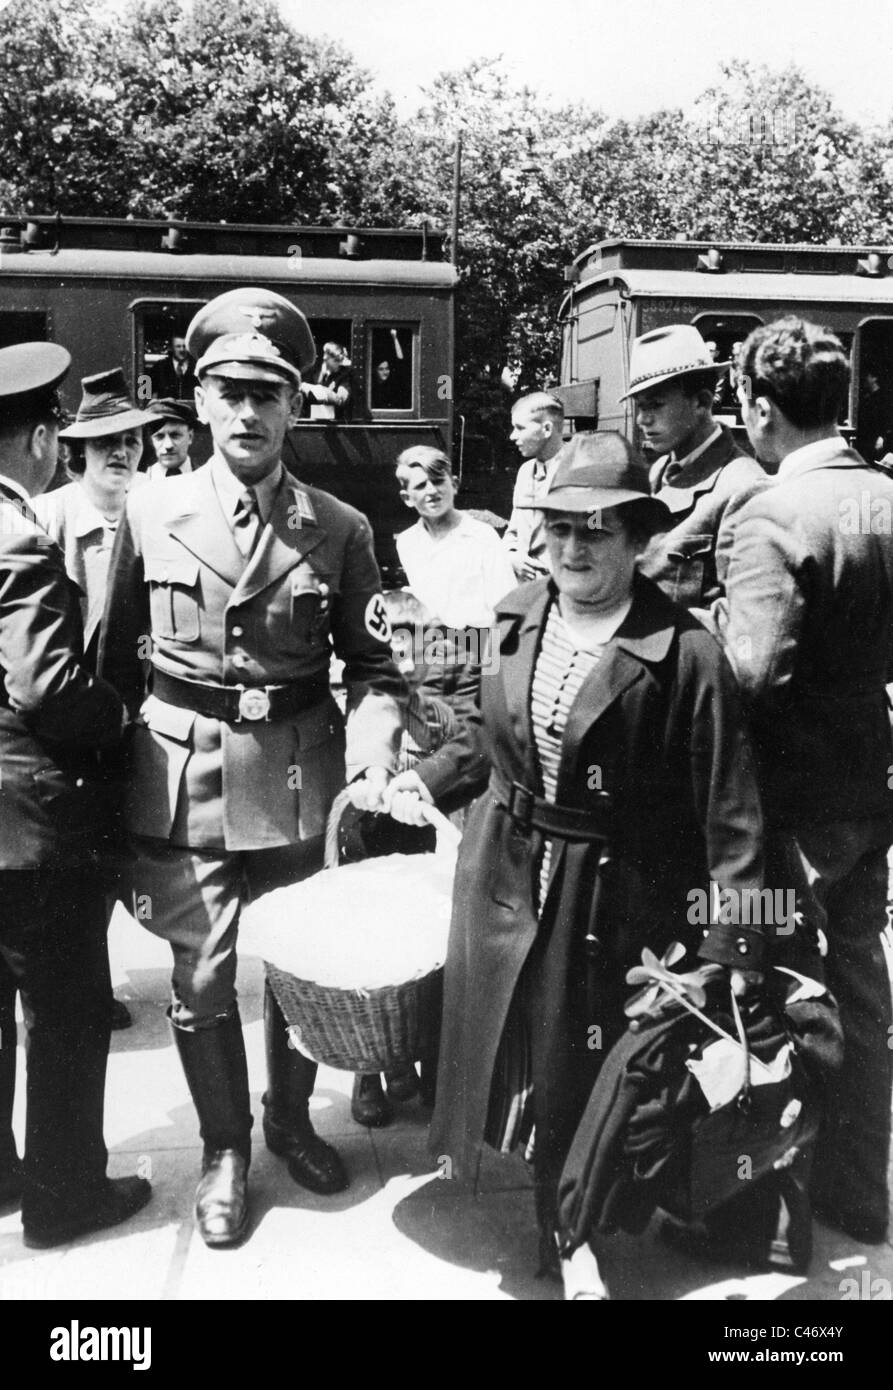 Seconde Guerre mondiale : Front de l'Ouest. "Drôle de guerre" entre les troupes allemandes et françaises, septembre 1939 - Mai 1940 Banque D'Images